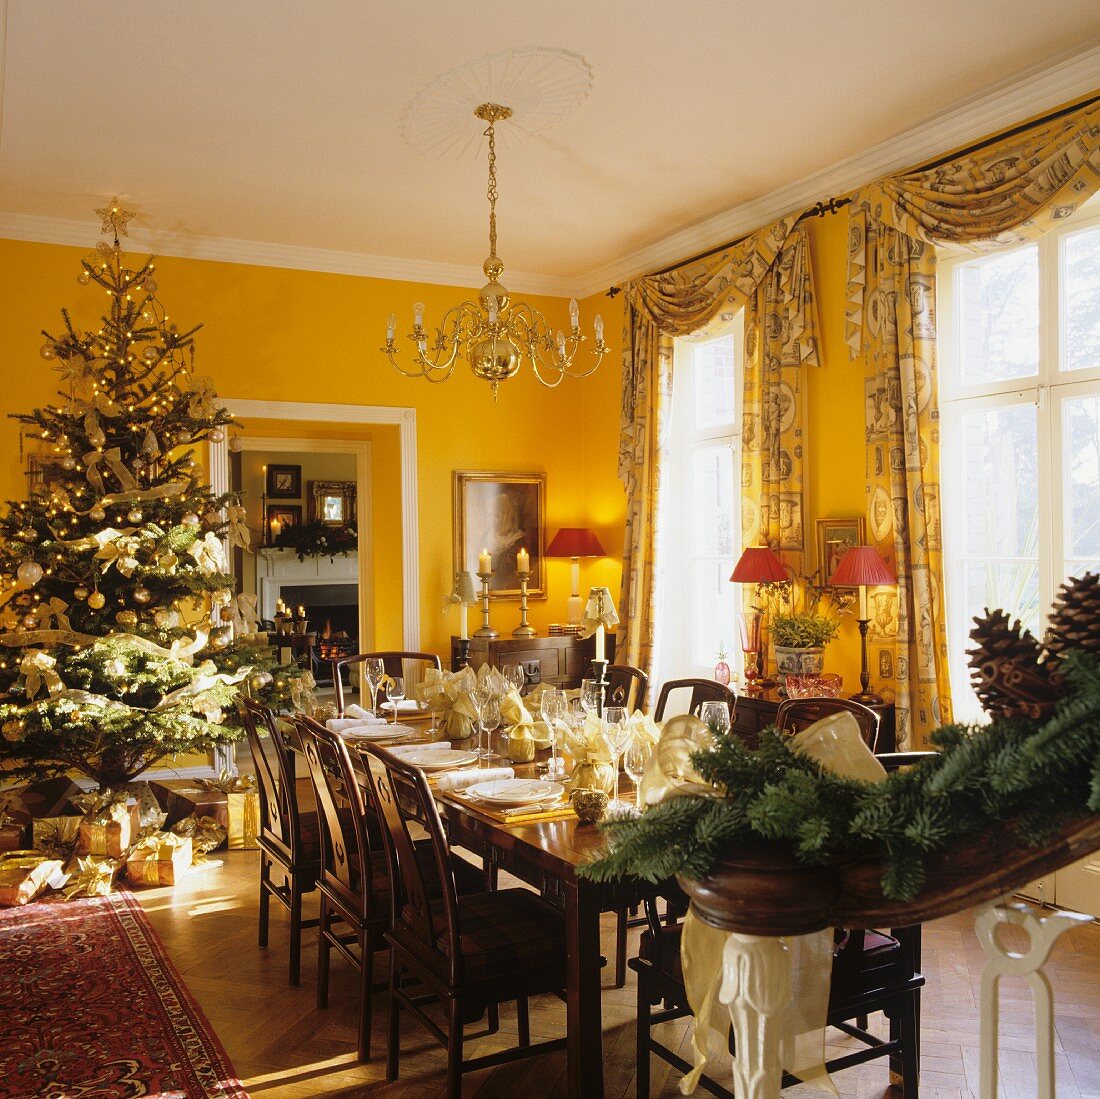 Weihnachtsfeier im Esszimmer eines englischen Landhauses mit raumhohen Fenstern und gelben Wänden